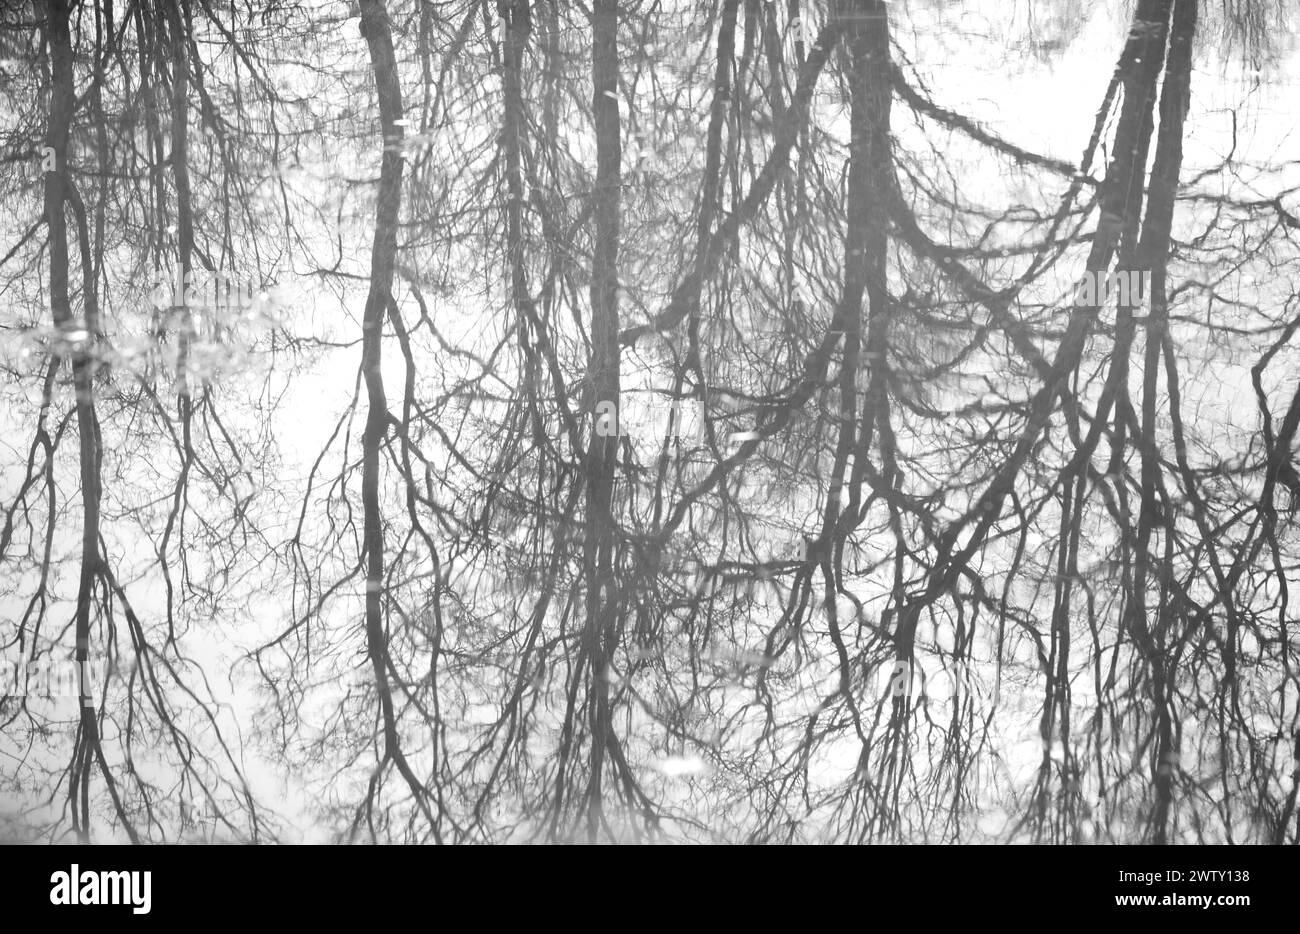 Bäume, Äste spiegeln sich im Wasser, Sprinken, fantastische Formen Stockfoto